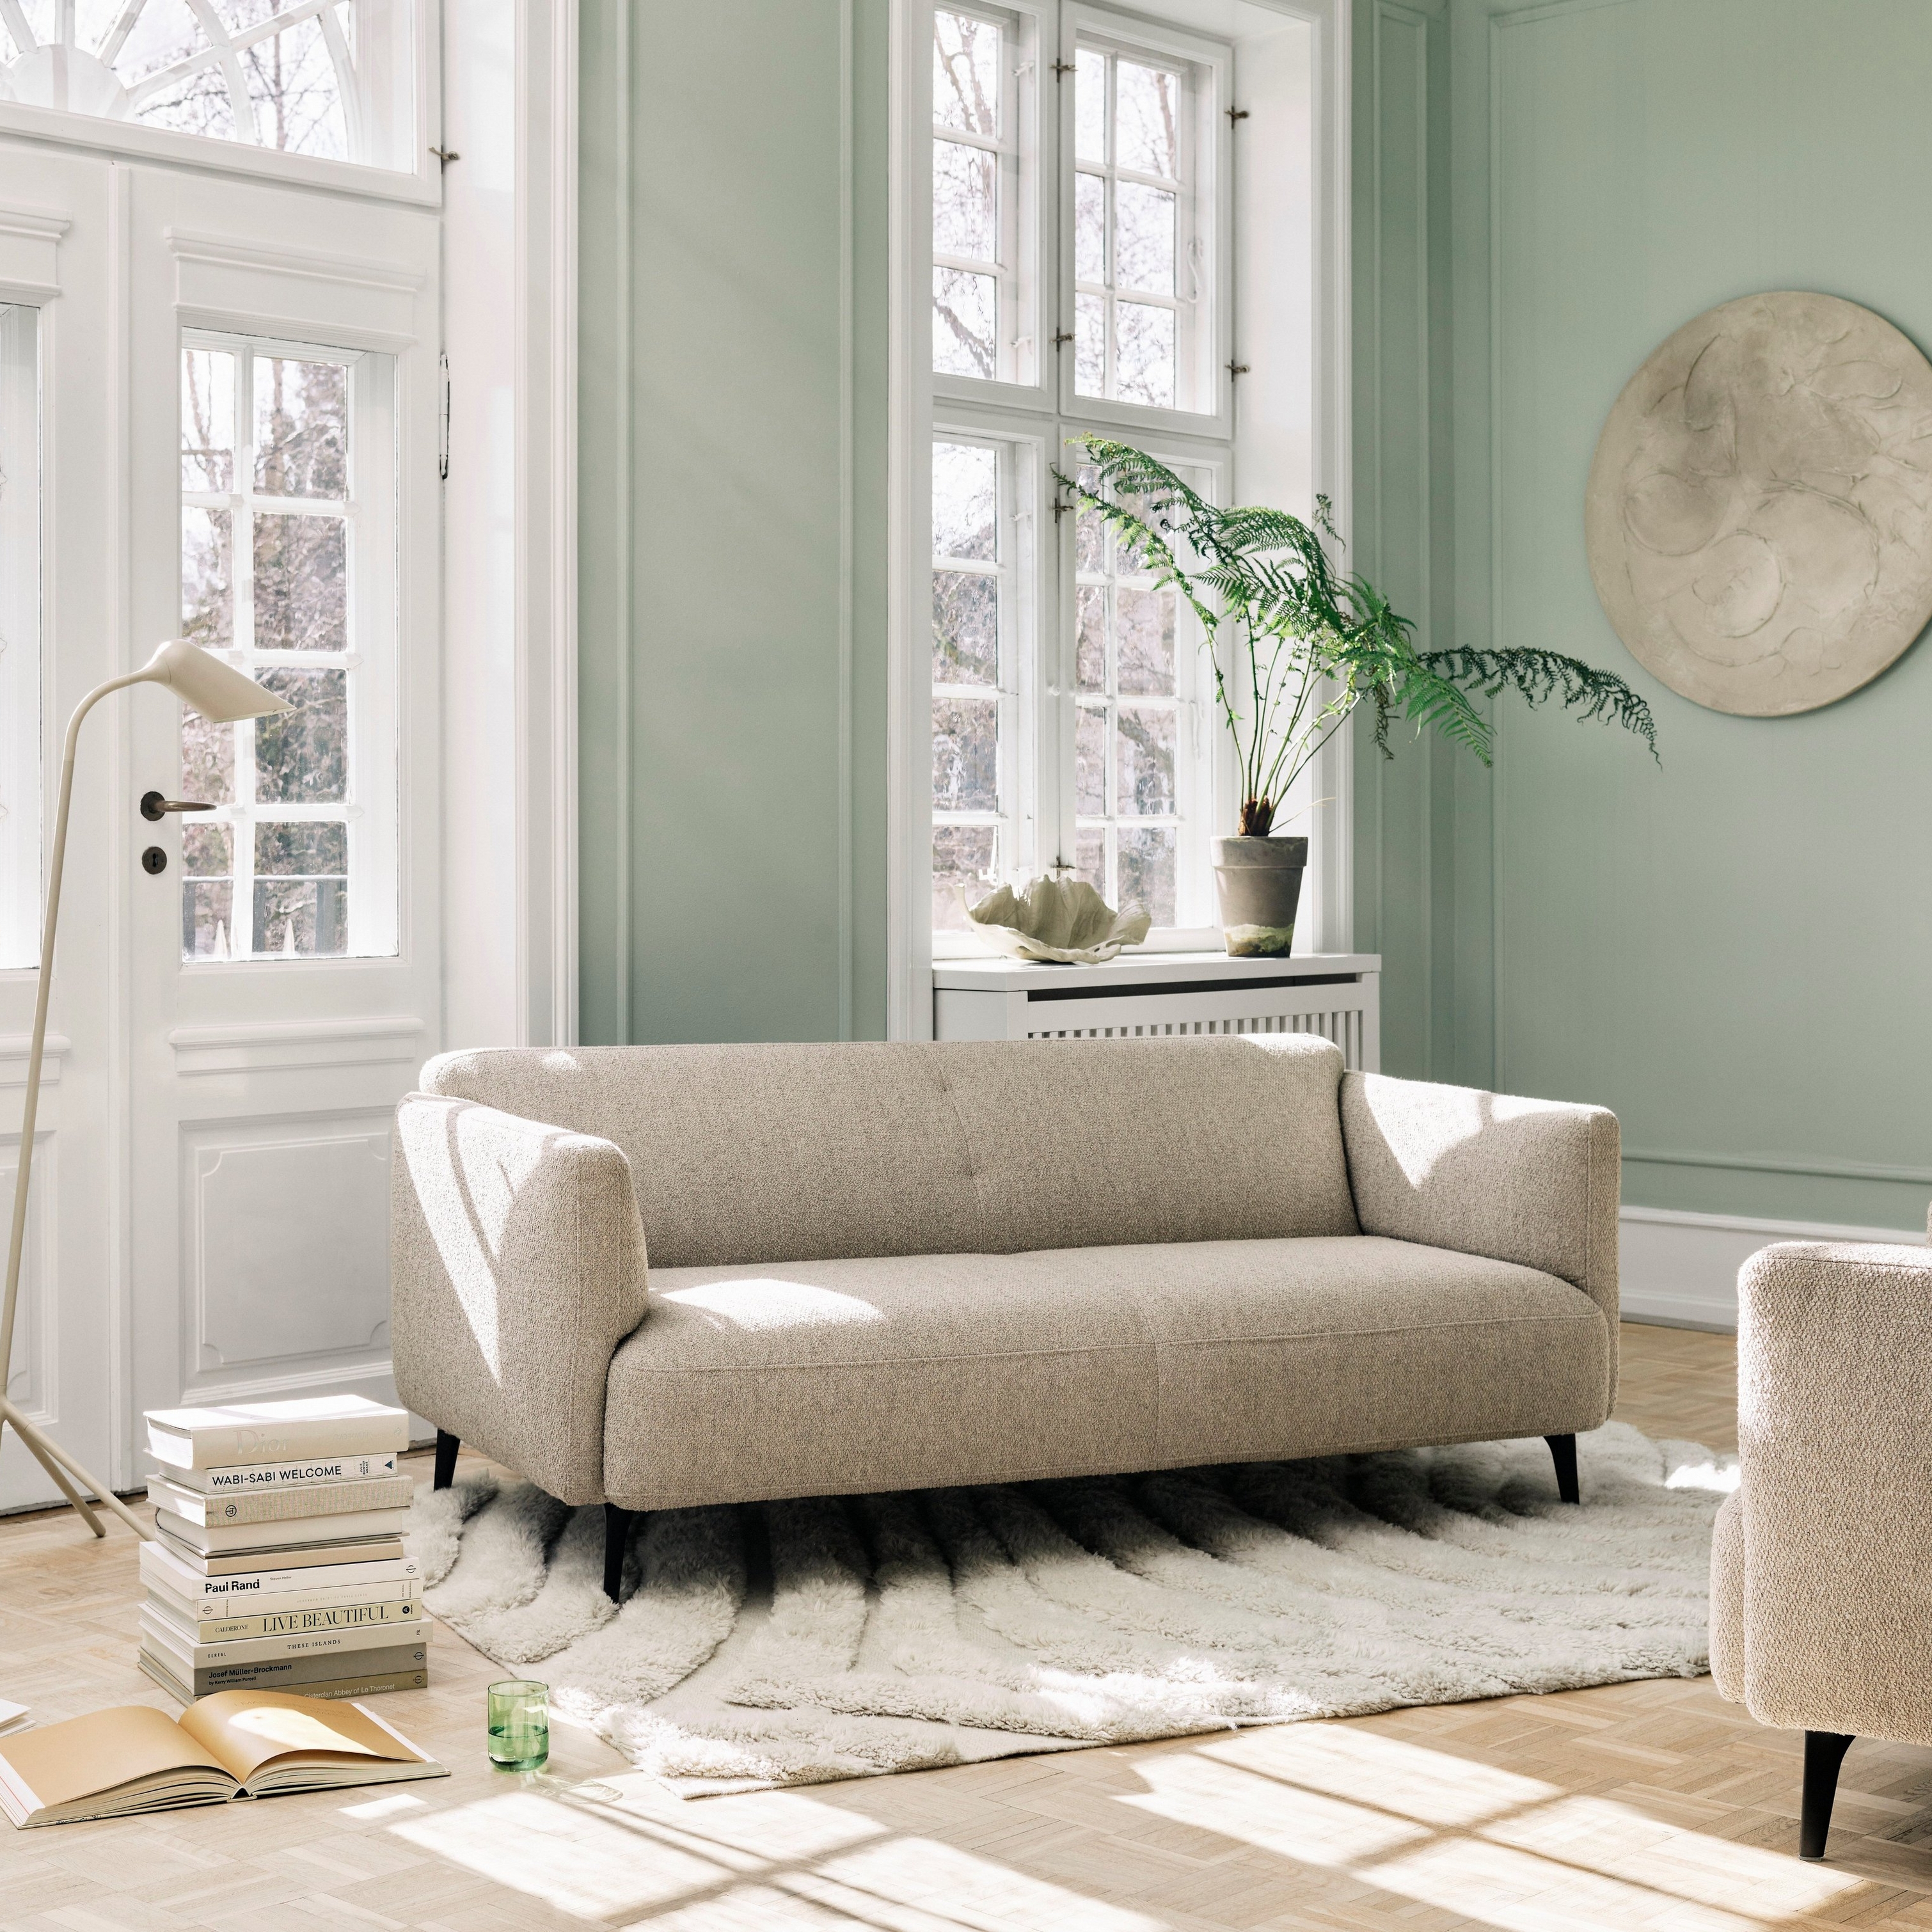 Sala de estar moderna e neutra com o sofá Modena e o candeeiro de chão Curious.